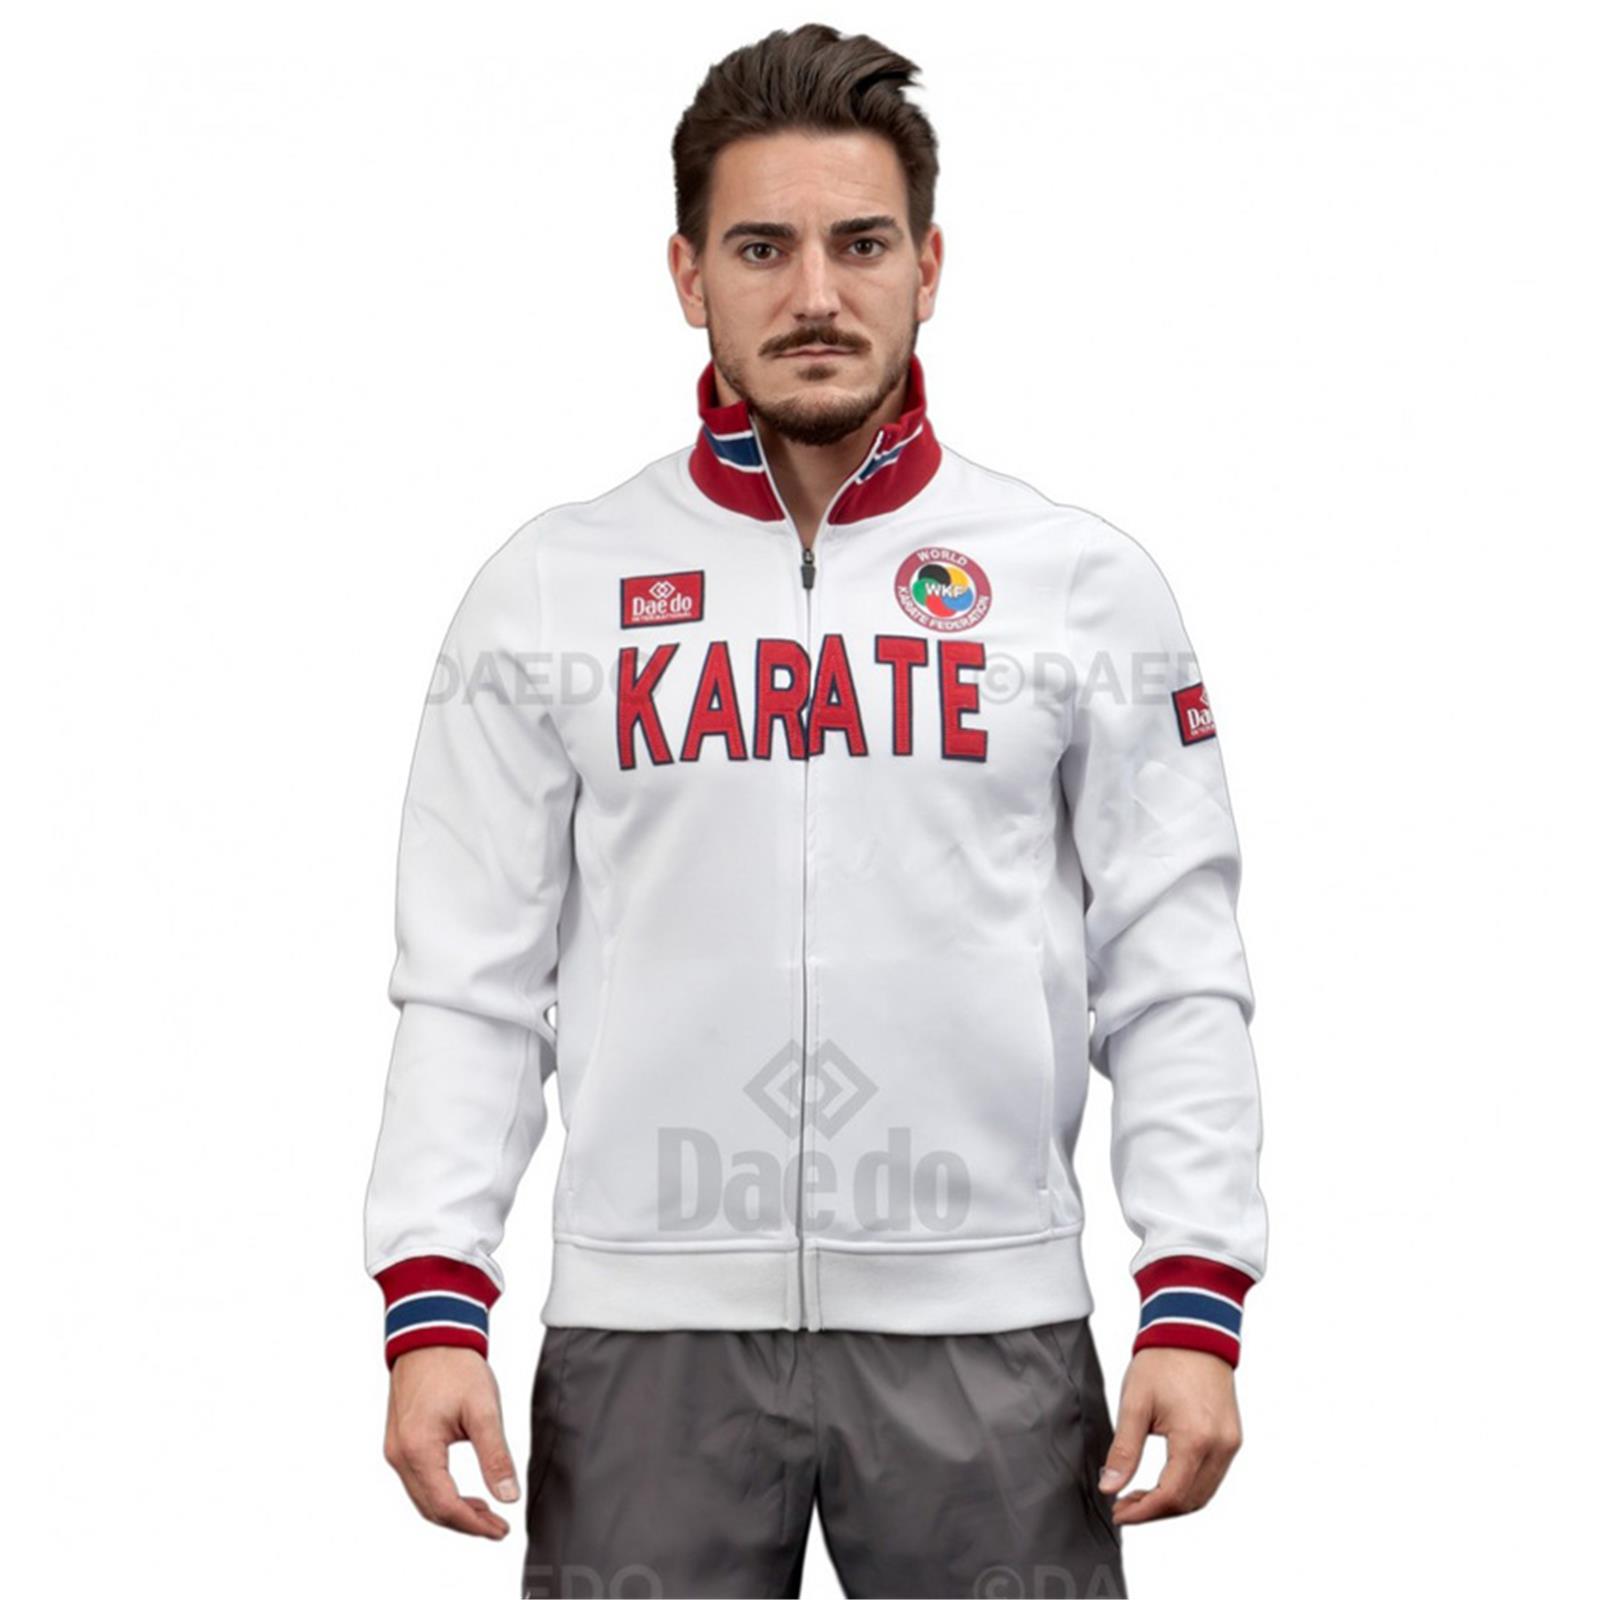 Dae Do Felpa Sportiva Karate slim jacket bianca (XS - BIANCO)